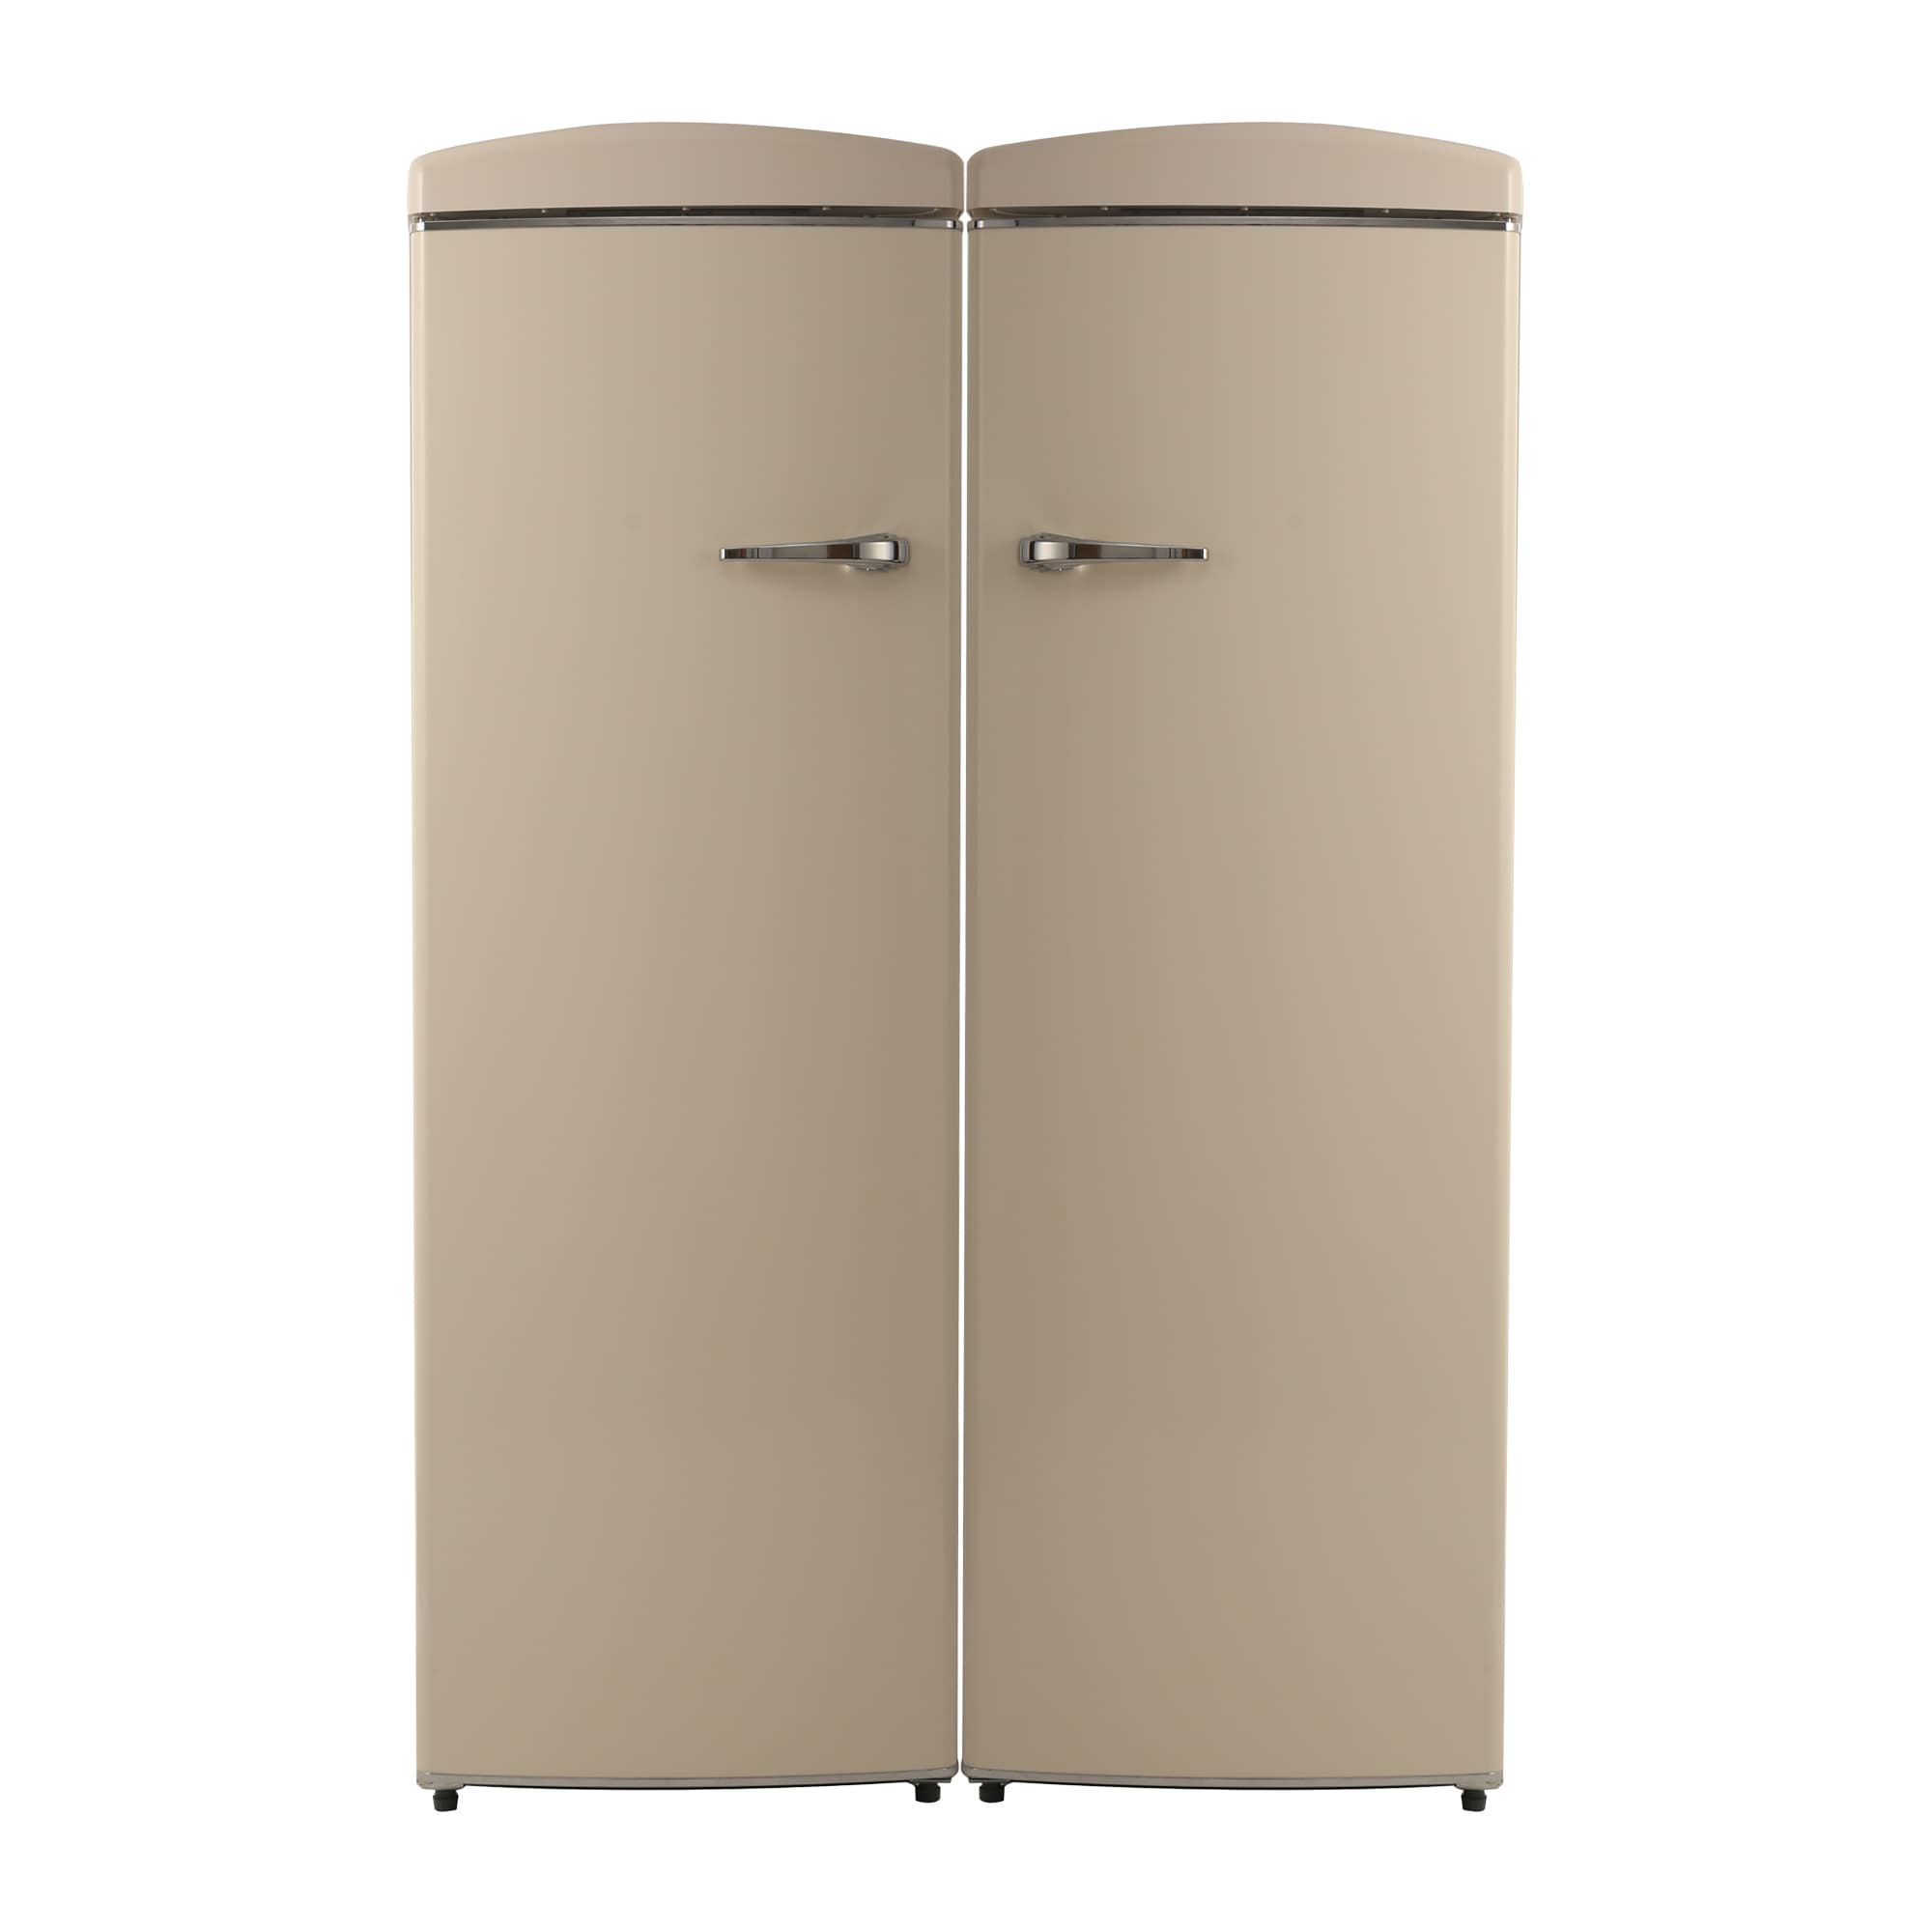 Retro Refrigerator-Freezer Set